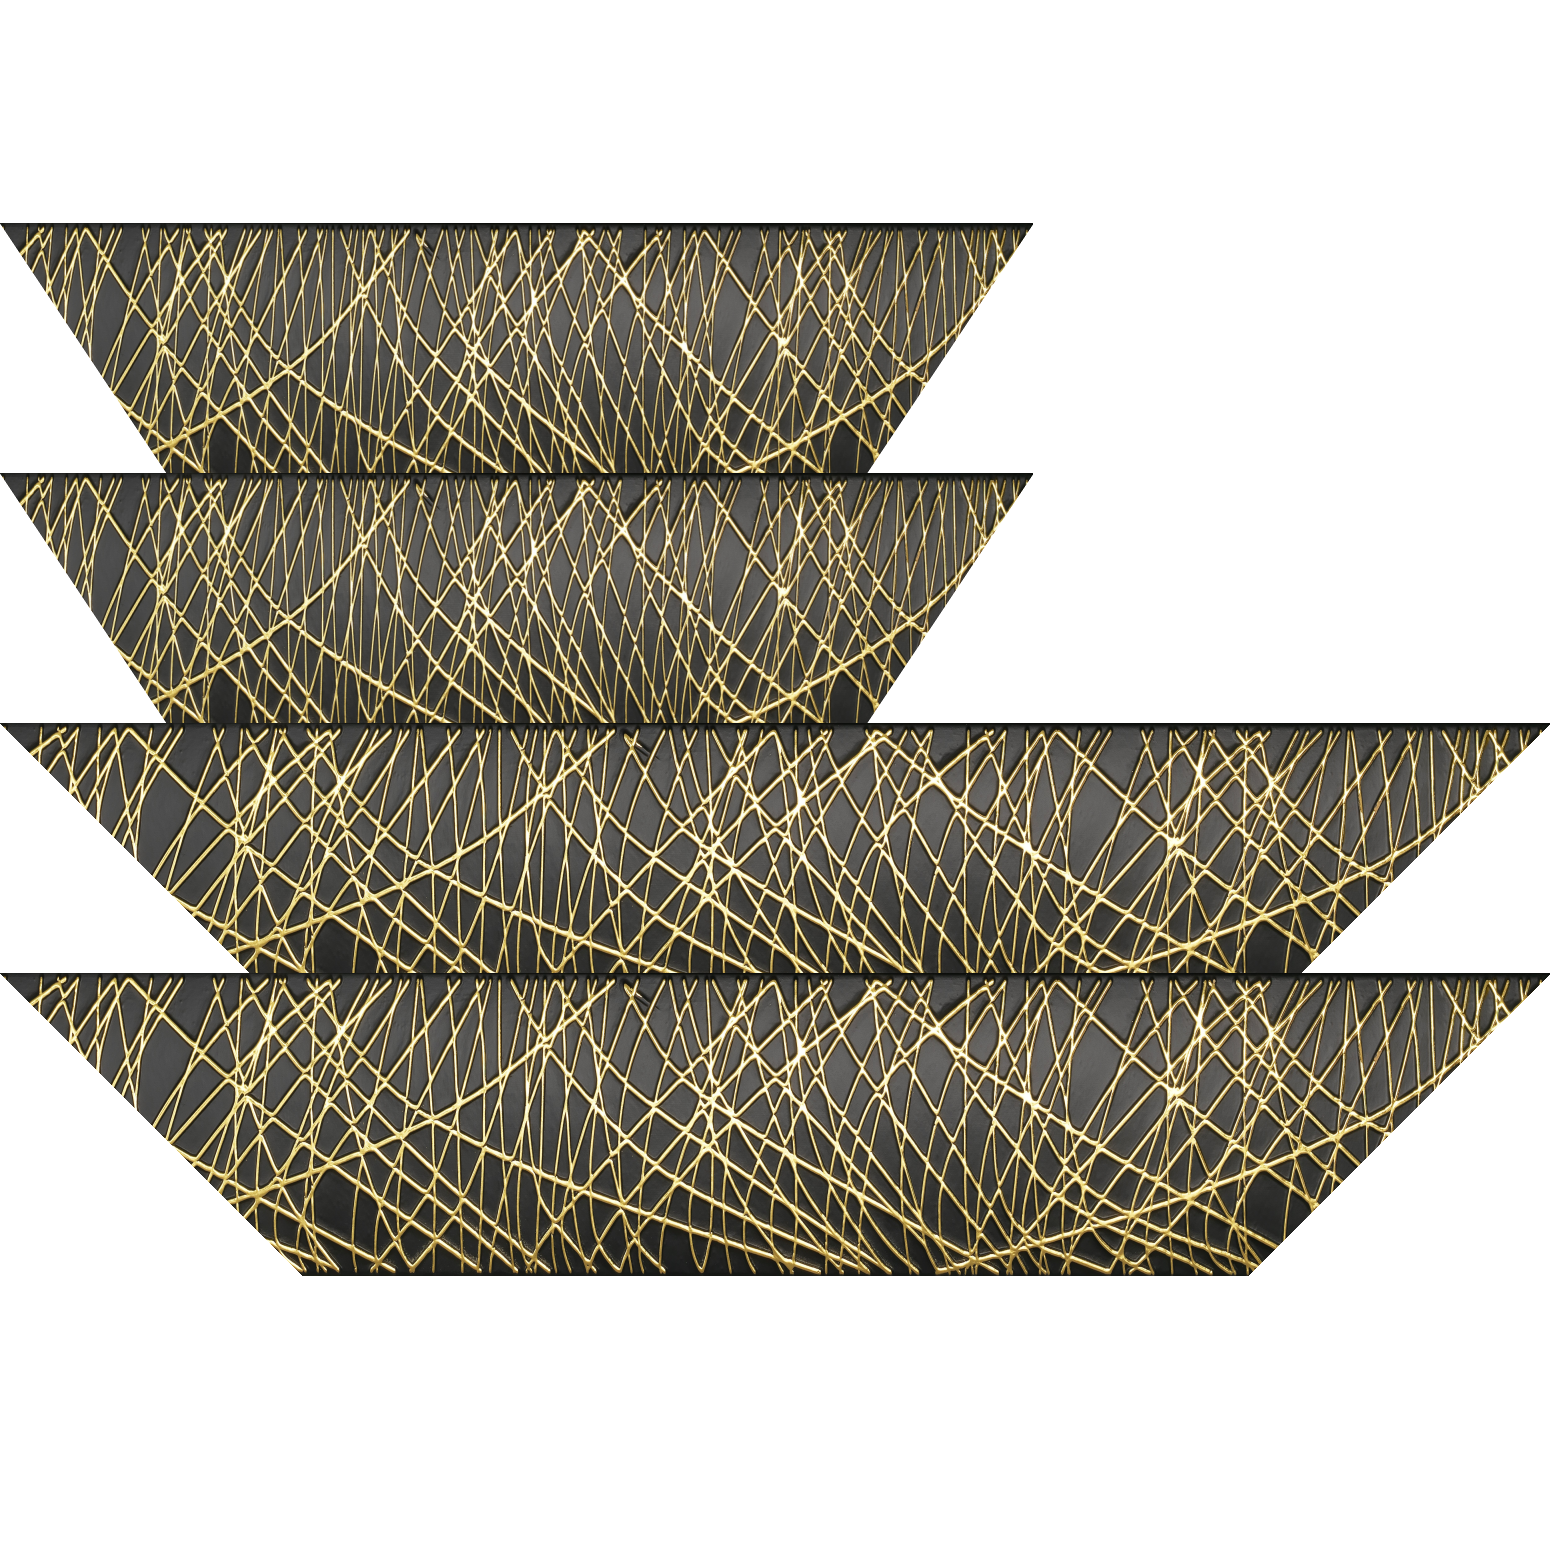 Baguette bois profil arrondi méplat largeur 9.9cm couleur noir satiné trait or en relief - 30x90